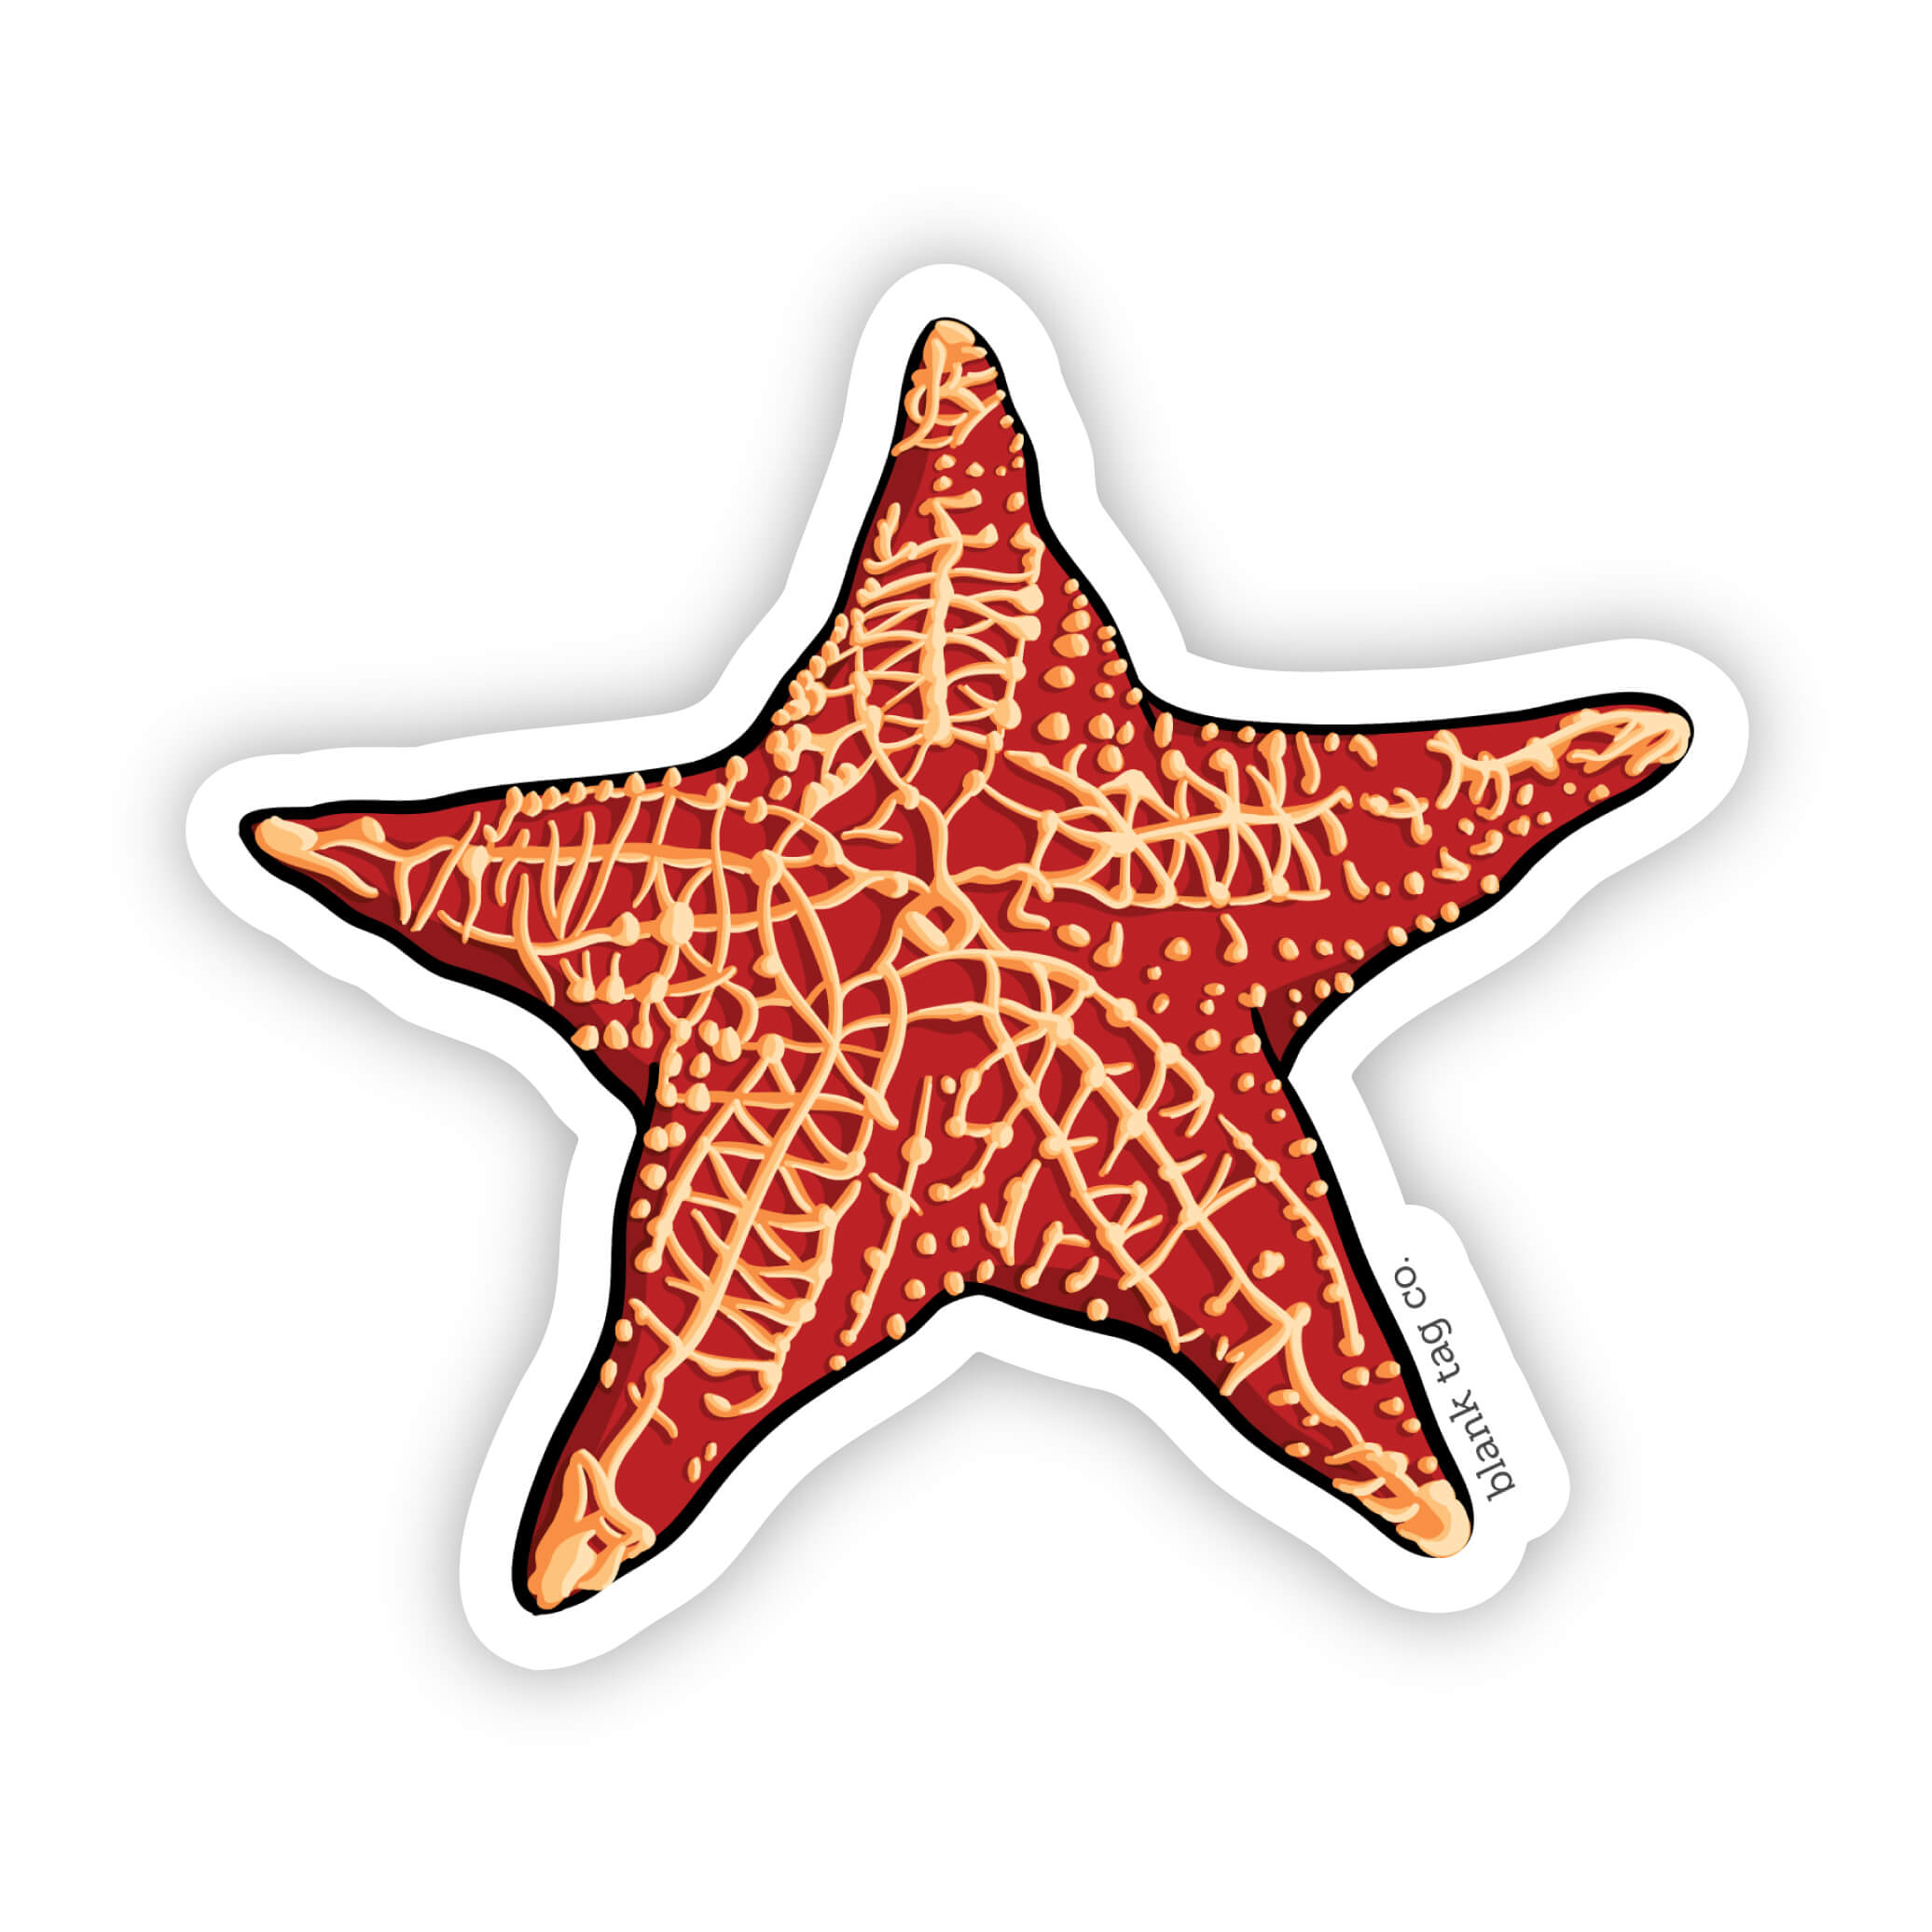 The Starfish Sticker